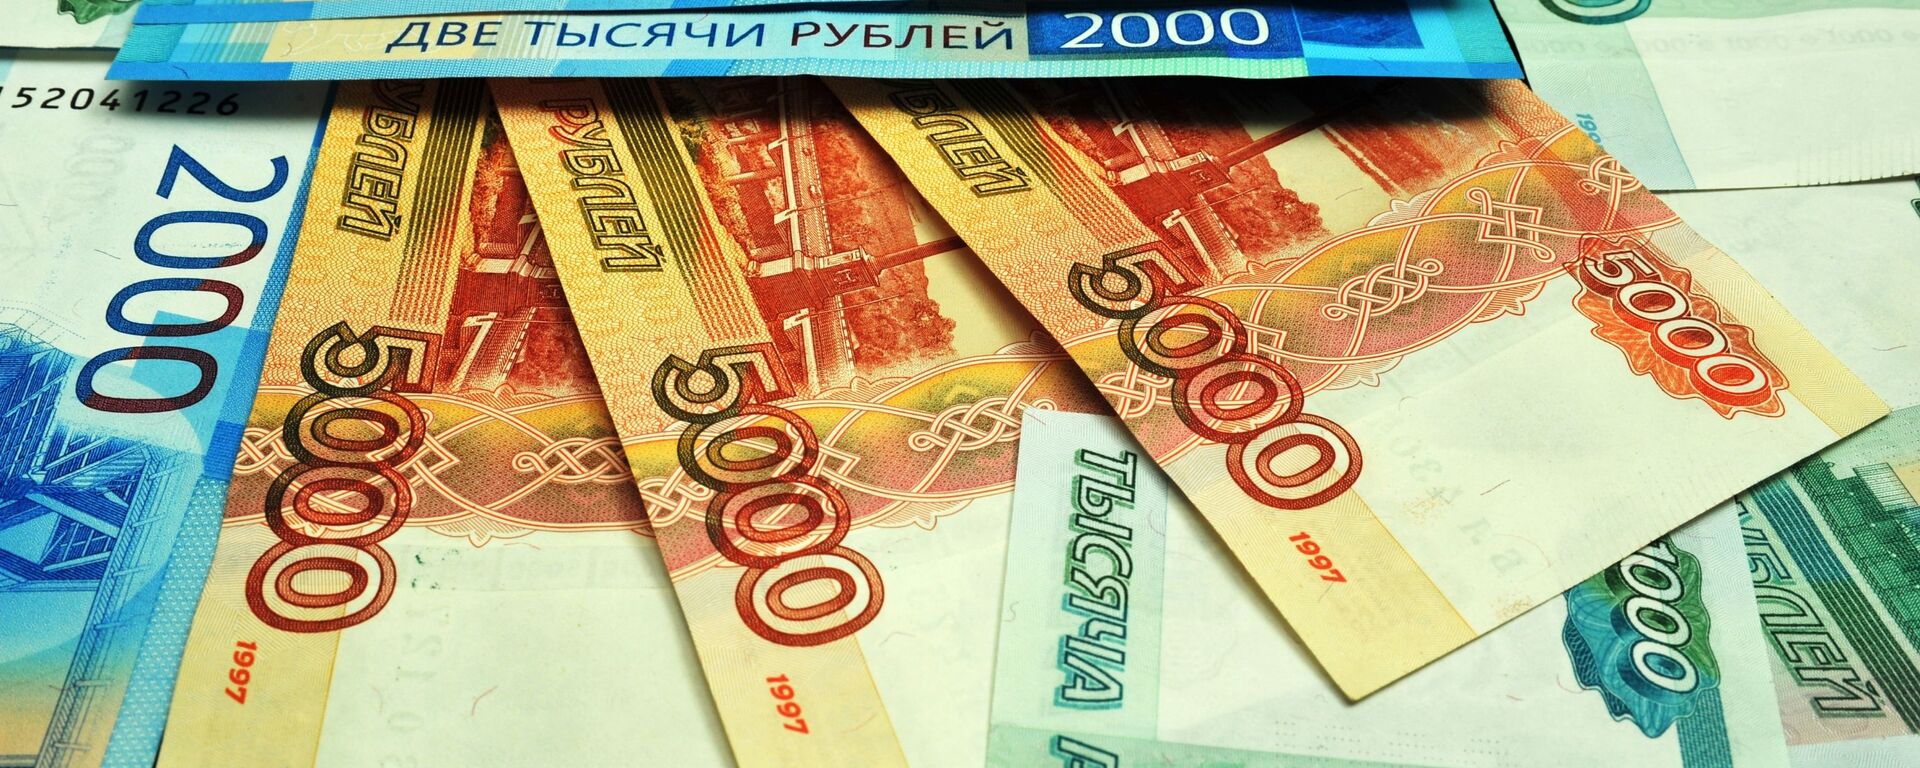 Банкноты номиналом 1000, 2000 и 5000 рублей. - Sputnik Абхазия, 1920, 19.11.2022